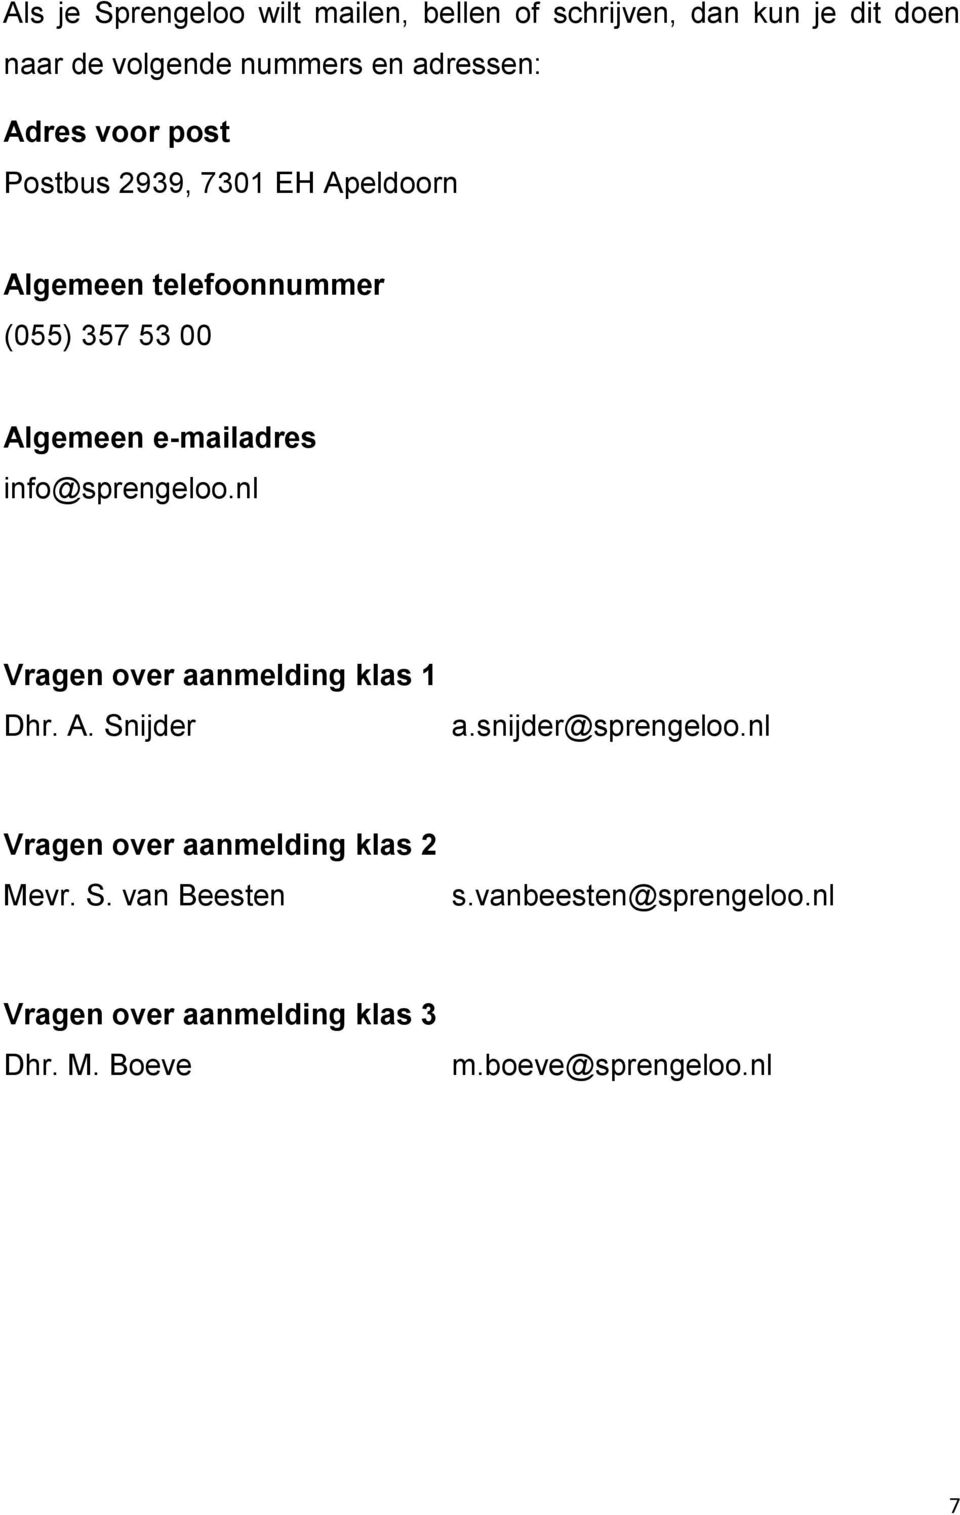 info@sprengeloo.nl Vragen over aanmelding klas 1 Dhr. A. Snijder a.snijder@sprengeloo.